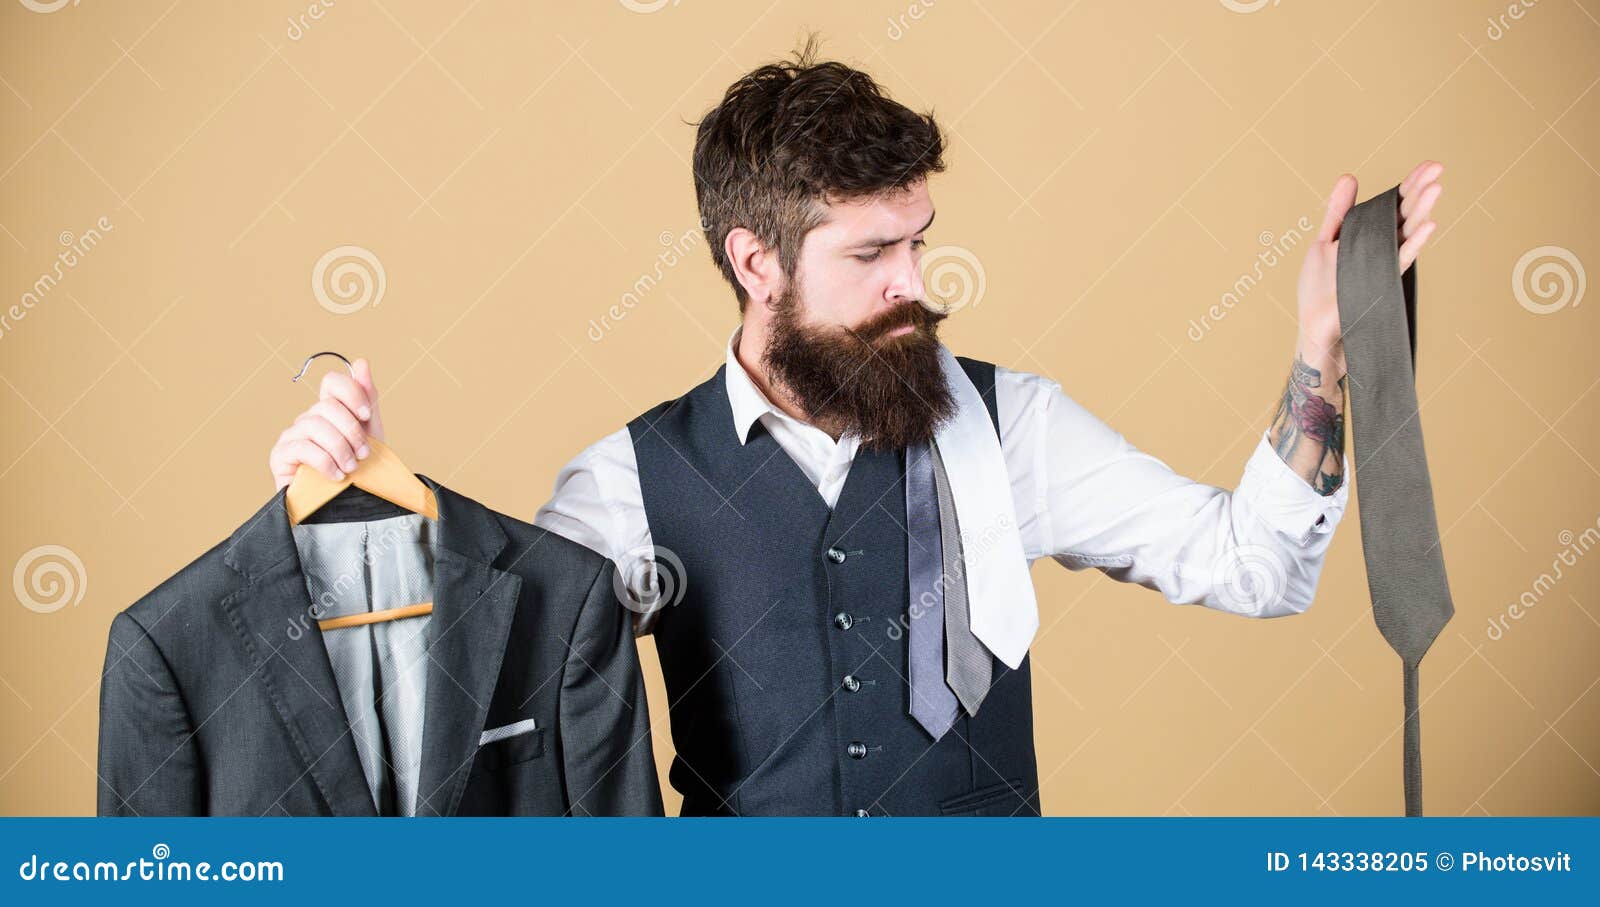 Wahl von Kleidung und von Zusätzen Hippie, der Einkaufswahl im Geschäft trifft Geschäftsmann, der Krawatte, auserlesenes Konzept wählt Zusammenpassende Bindungsfarbe des bärtigen Mannes, zum der Jacke im Speicher zu entsprechen Dieses ist eine gute Wahl